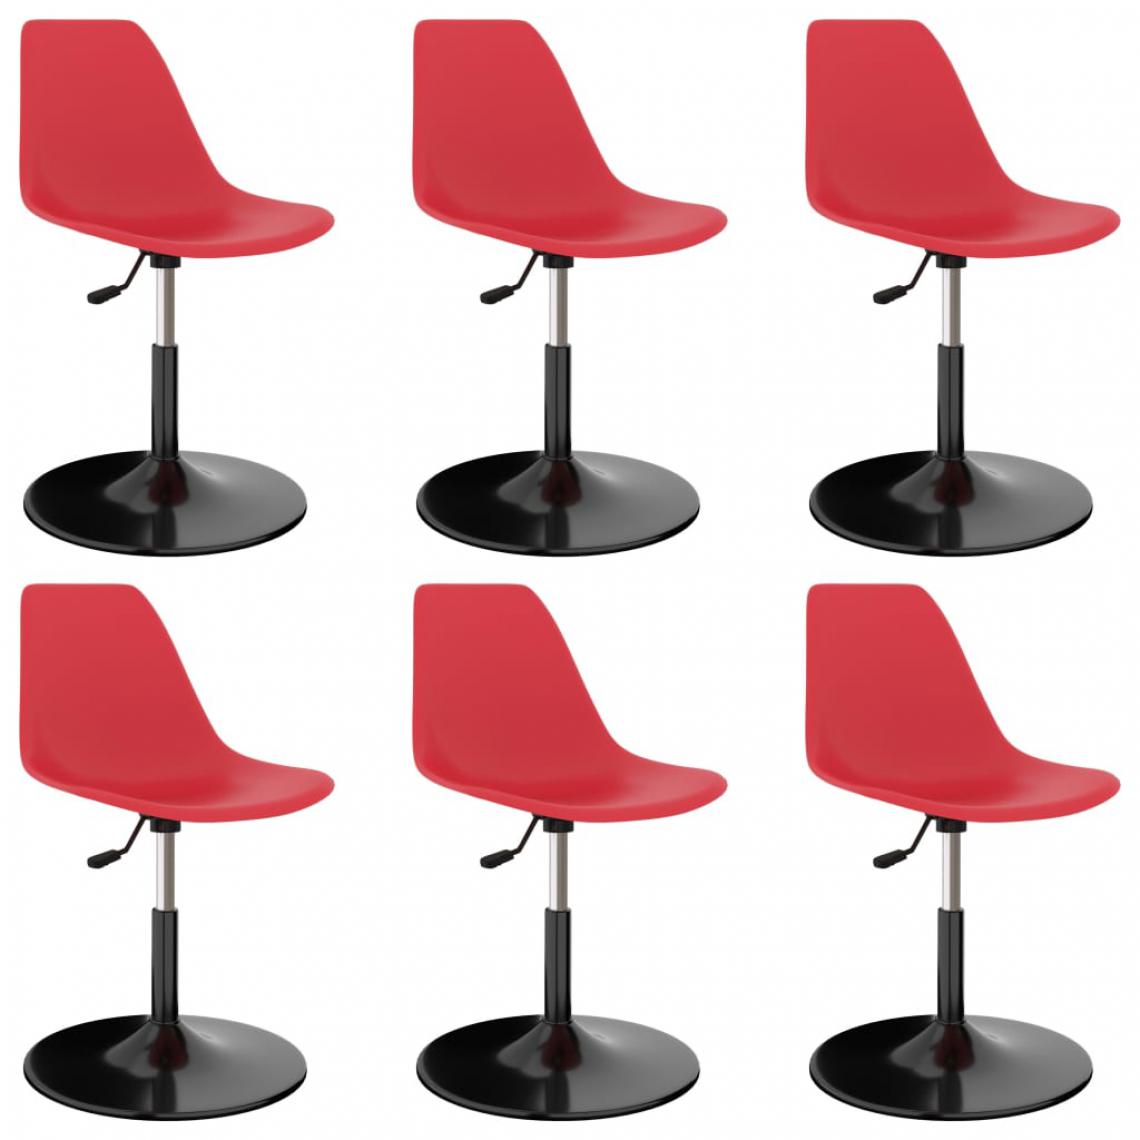 Icaverne - Splendide Fauteuils et chaises serie Londres Chaises de salle à manger pivotantes 6 pcs Rouge PP - Chaises